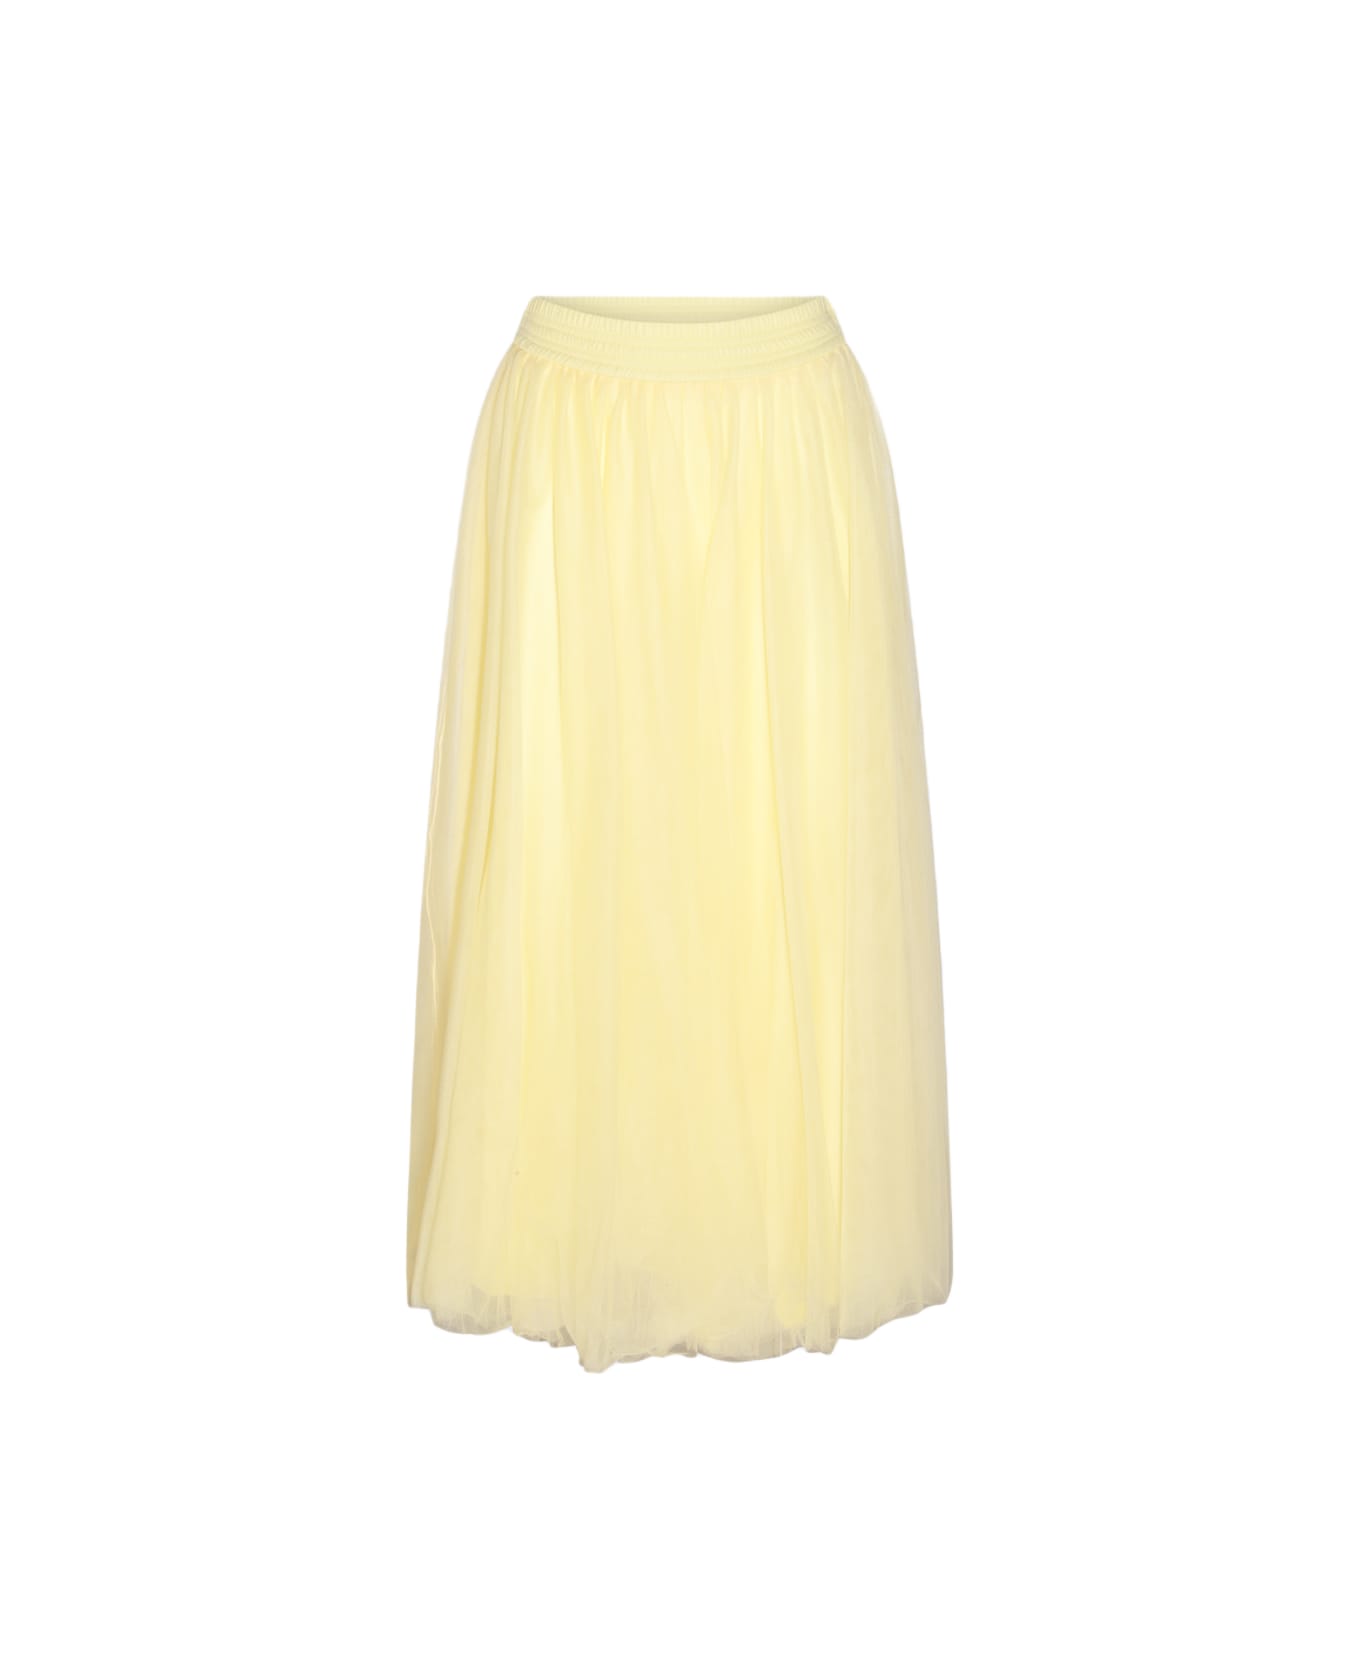 Fabiana Filippi Yellow Skirt - Yellow